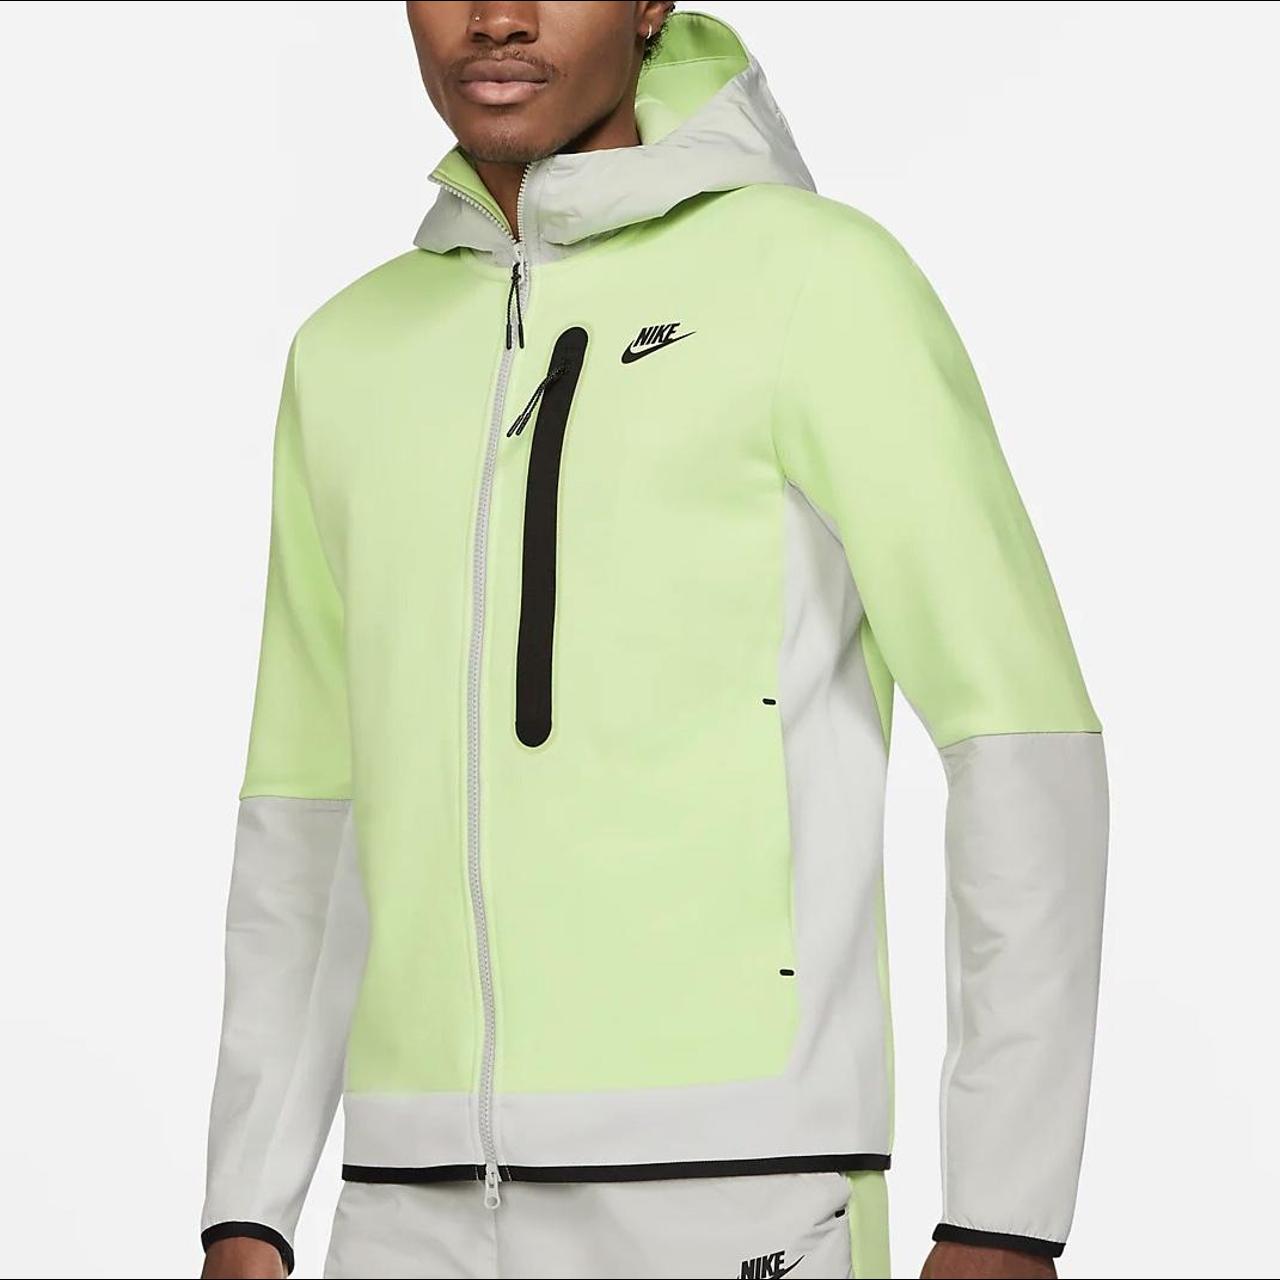 Nike tech fleece zip up light-neon green/grey hoodie... - Depop